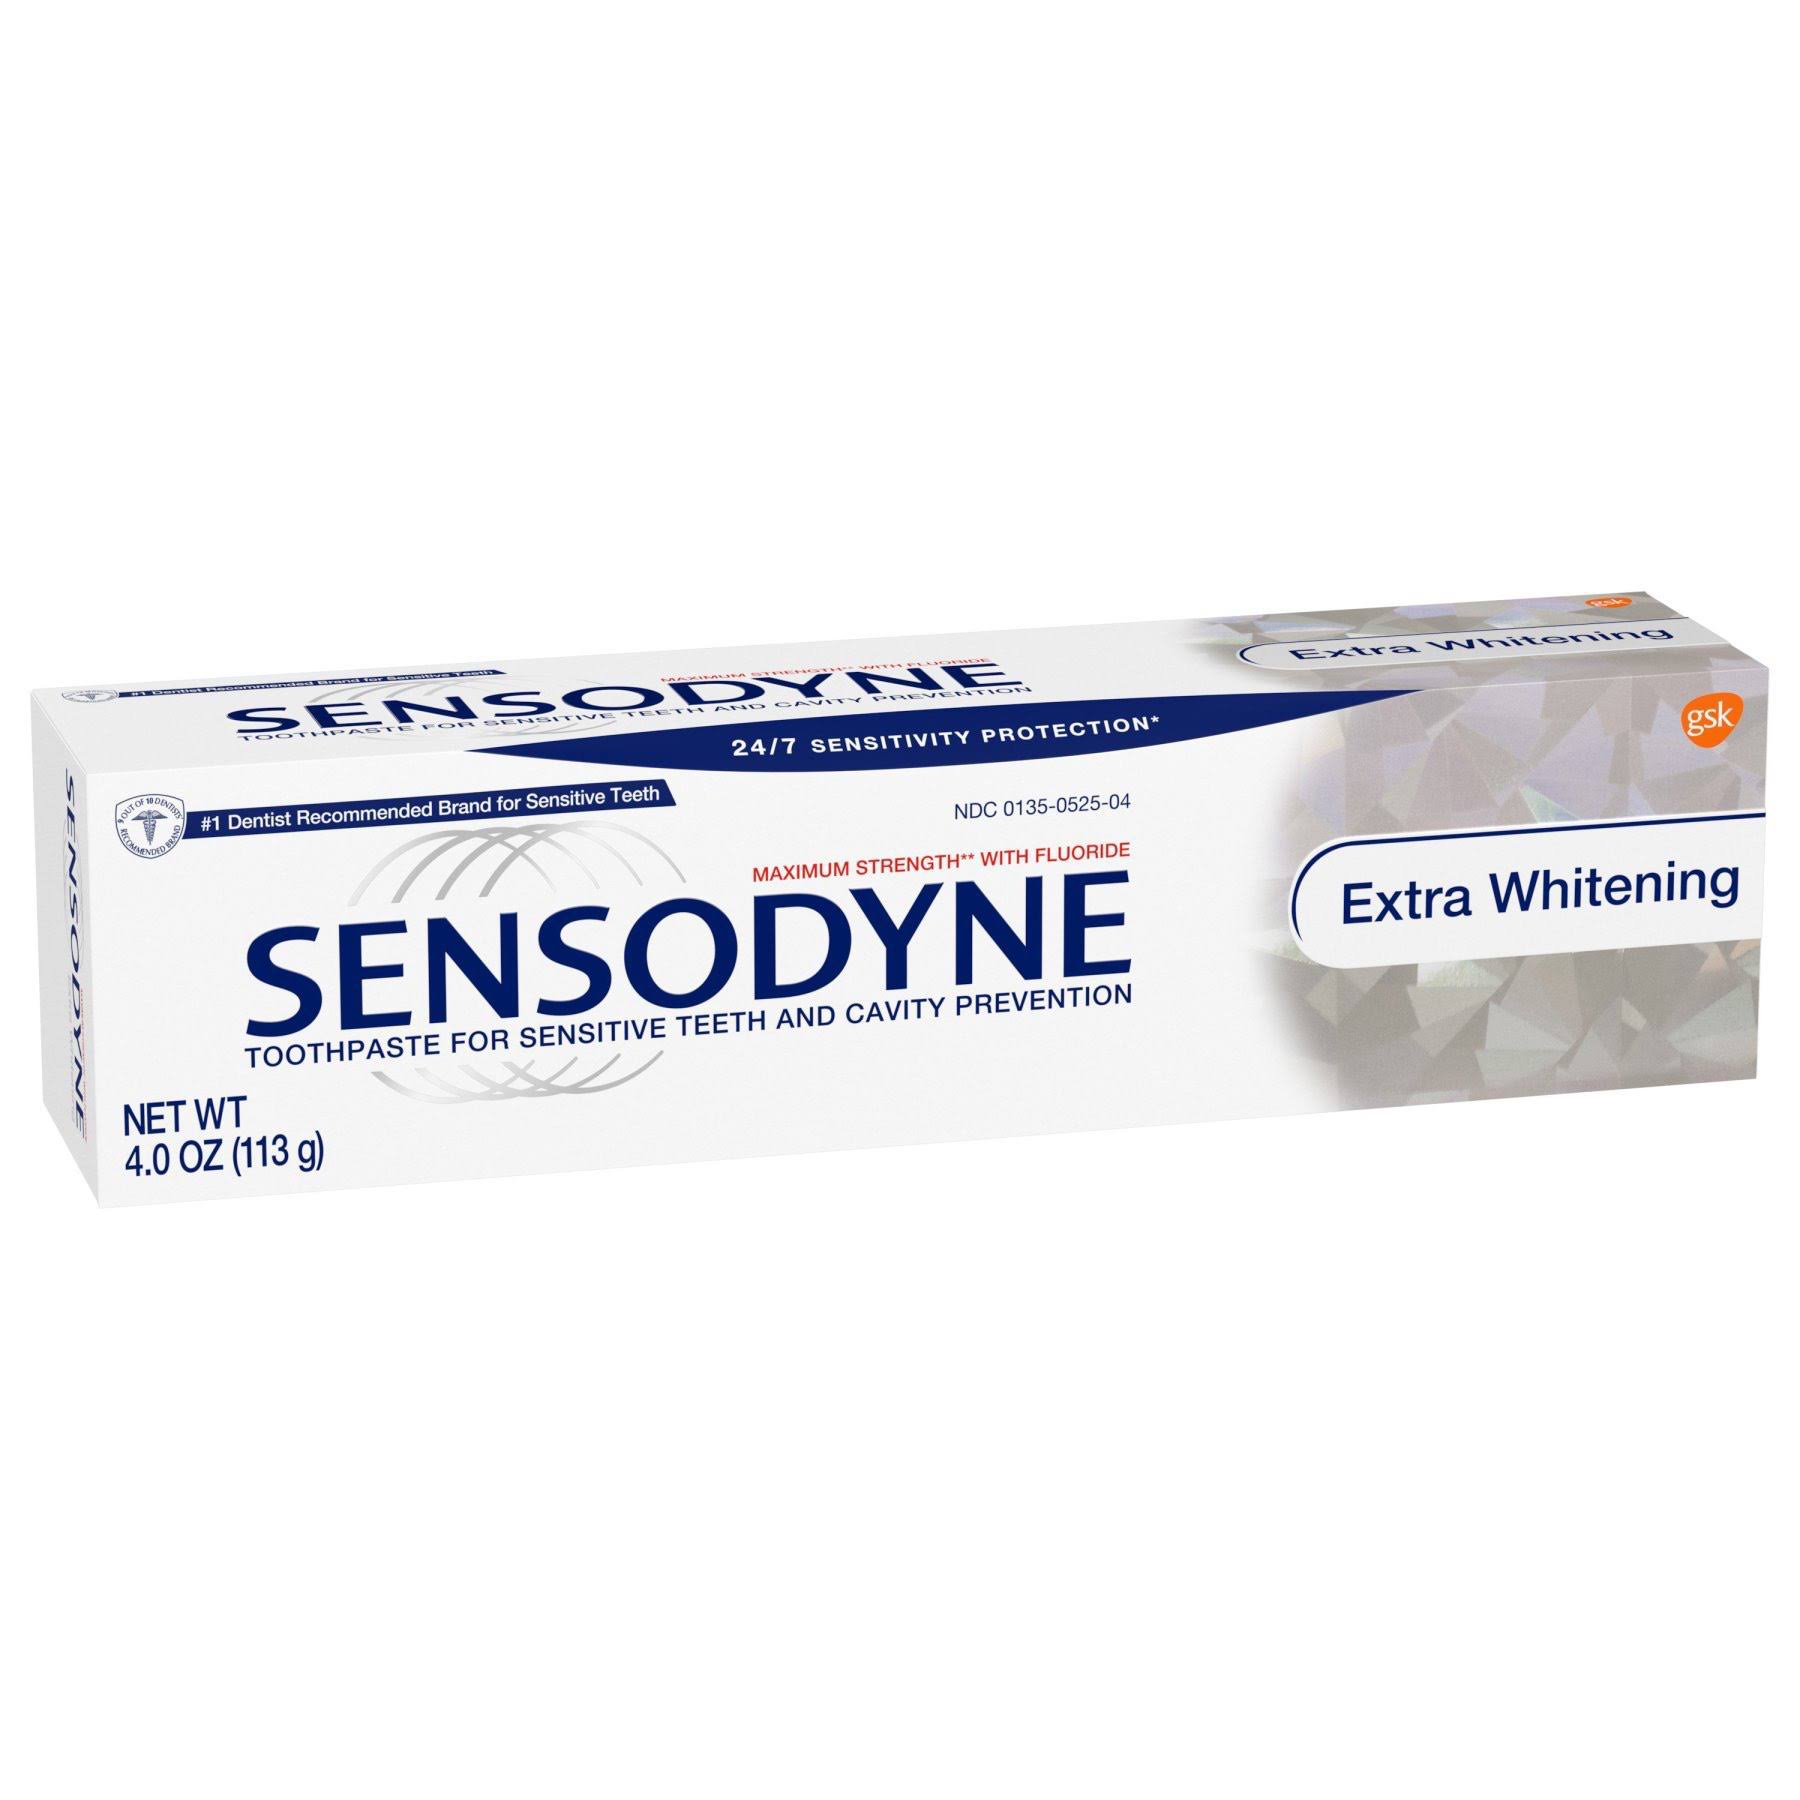 Sensodyne Toothpaste - Whitening (75ml)